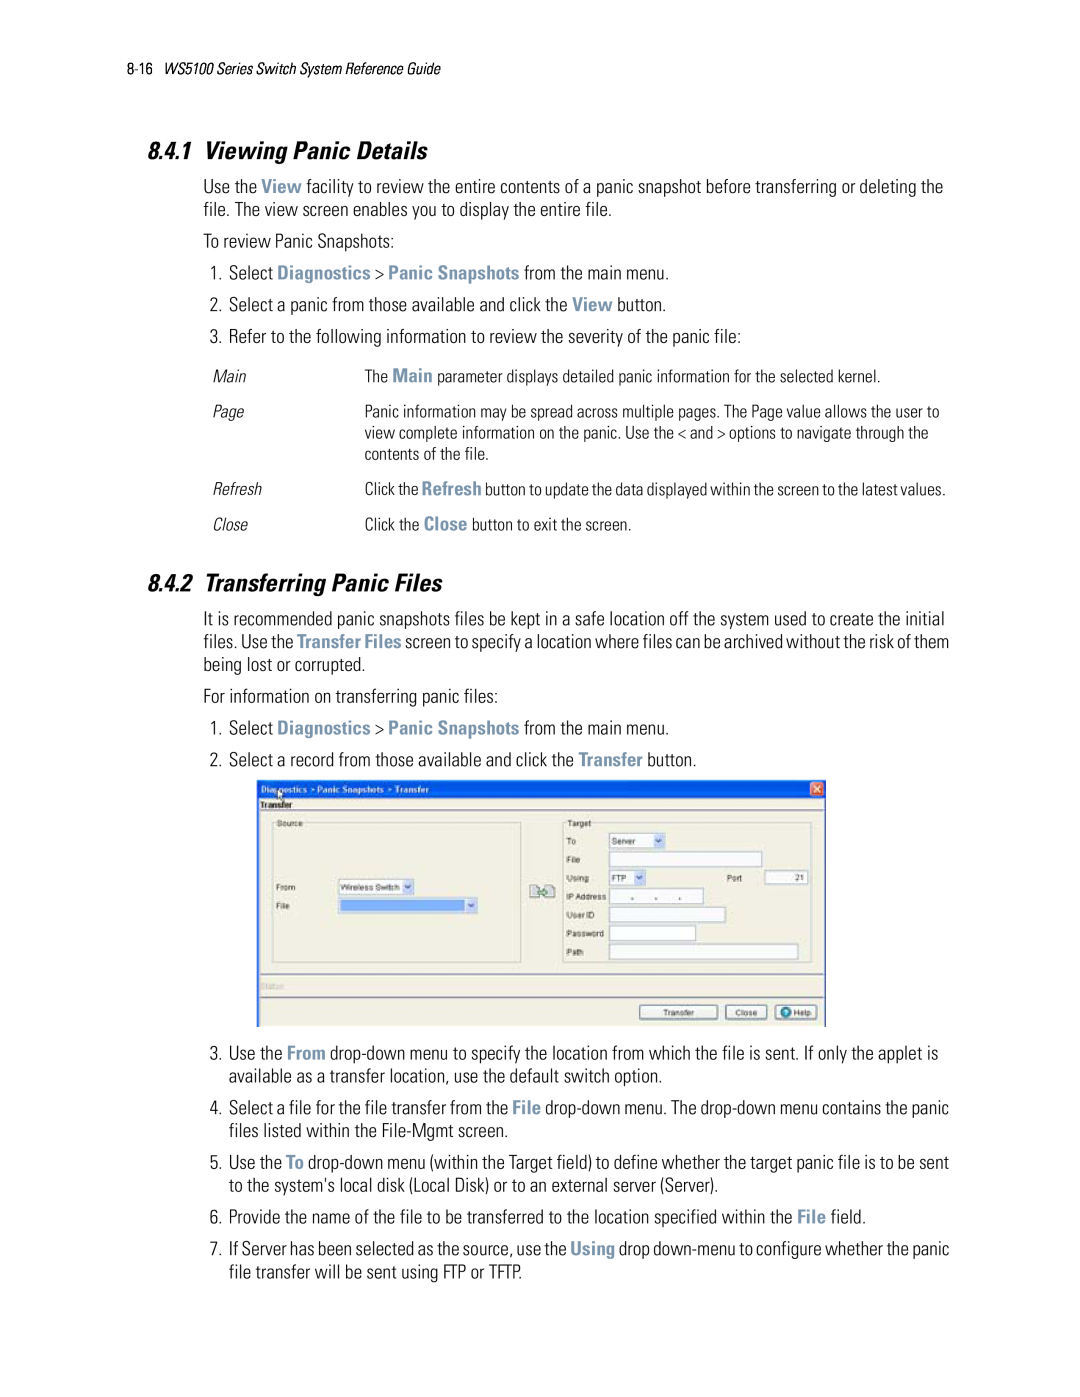 Motorola WS5100 manual Viewing Panic Details, Transferring Panic Files 